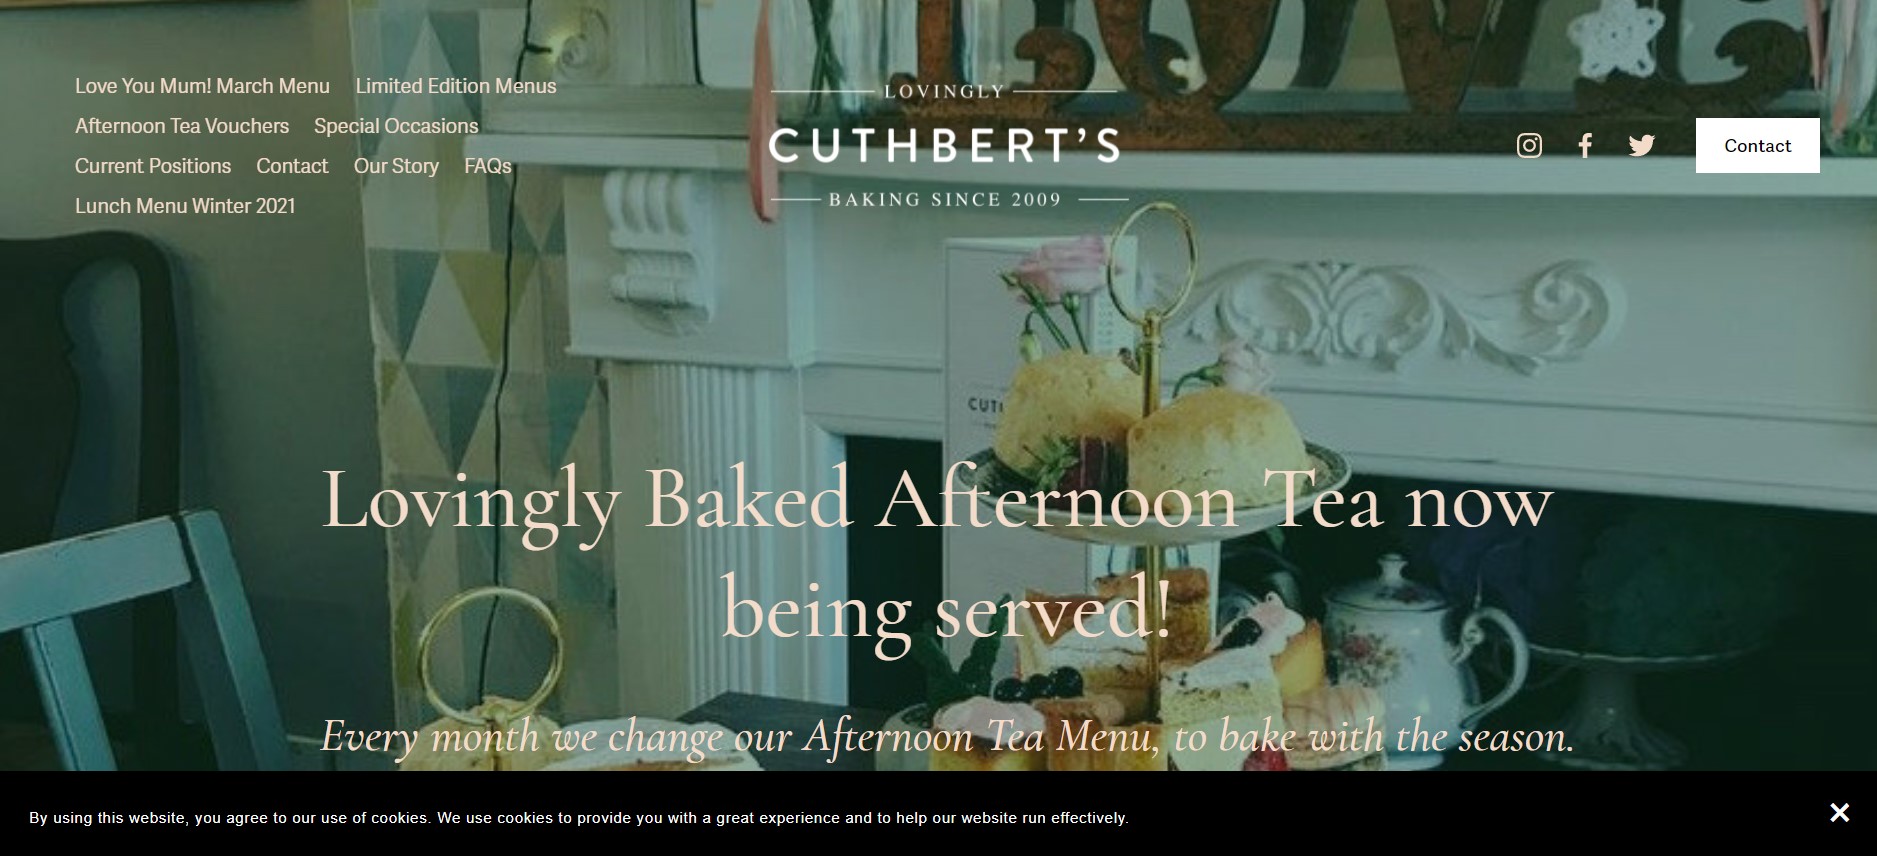 Cuthbert's Bakehouse